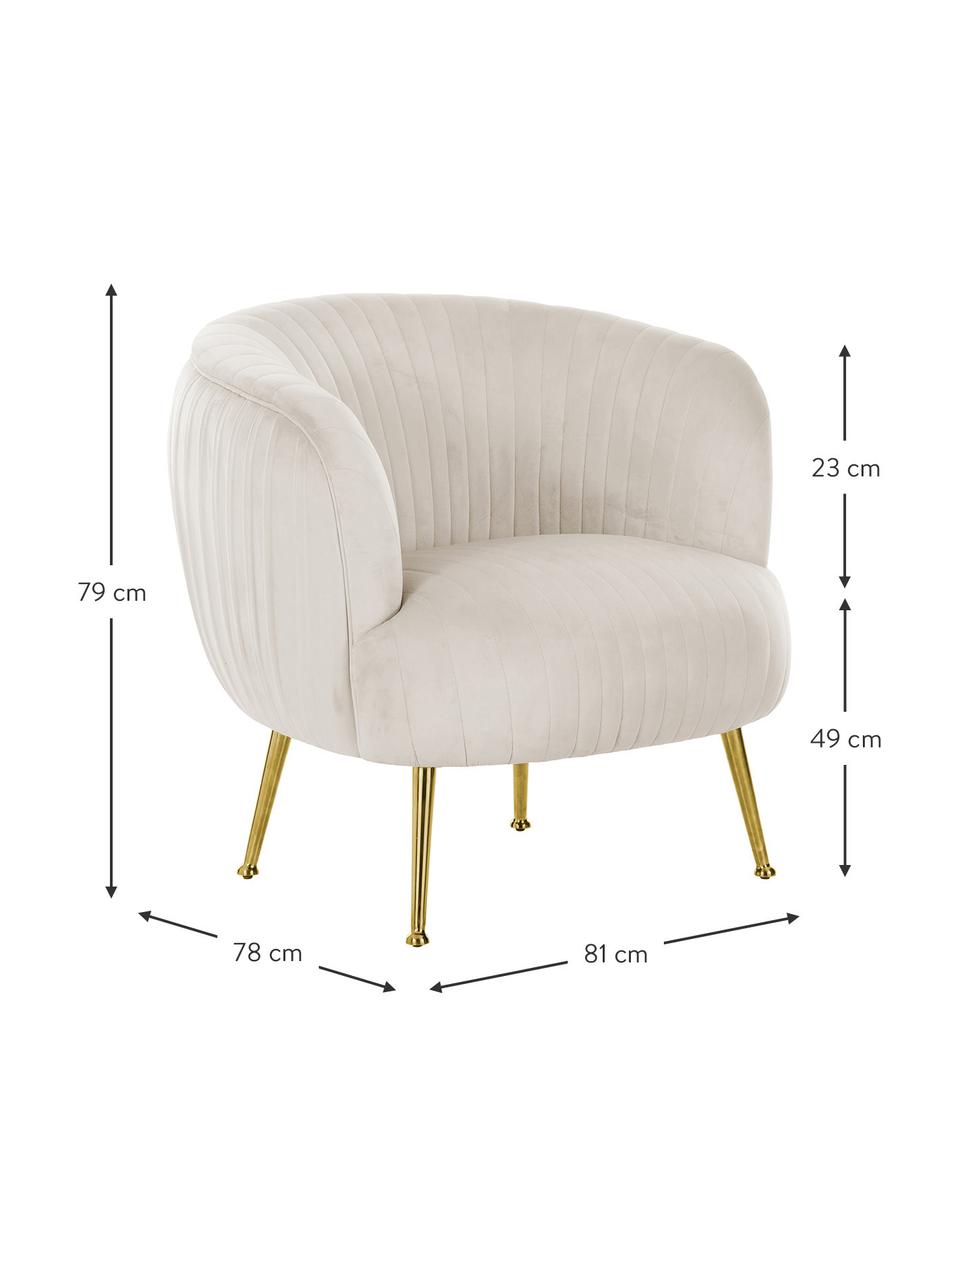 Fluwelen fauteuil Cara in beige, Bekleding: fluweel (polyester), Frame: massief berkenhout, spaan, Poten: gecoat metaal, Fluweel beige, 81 x 78 cm